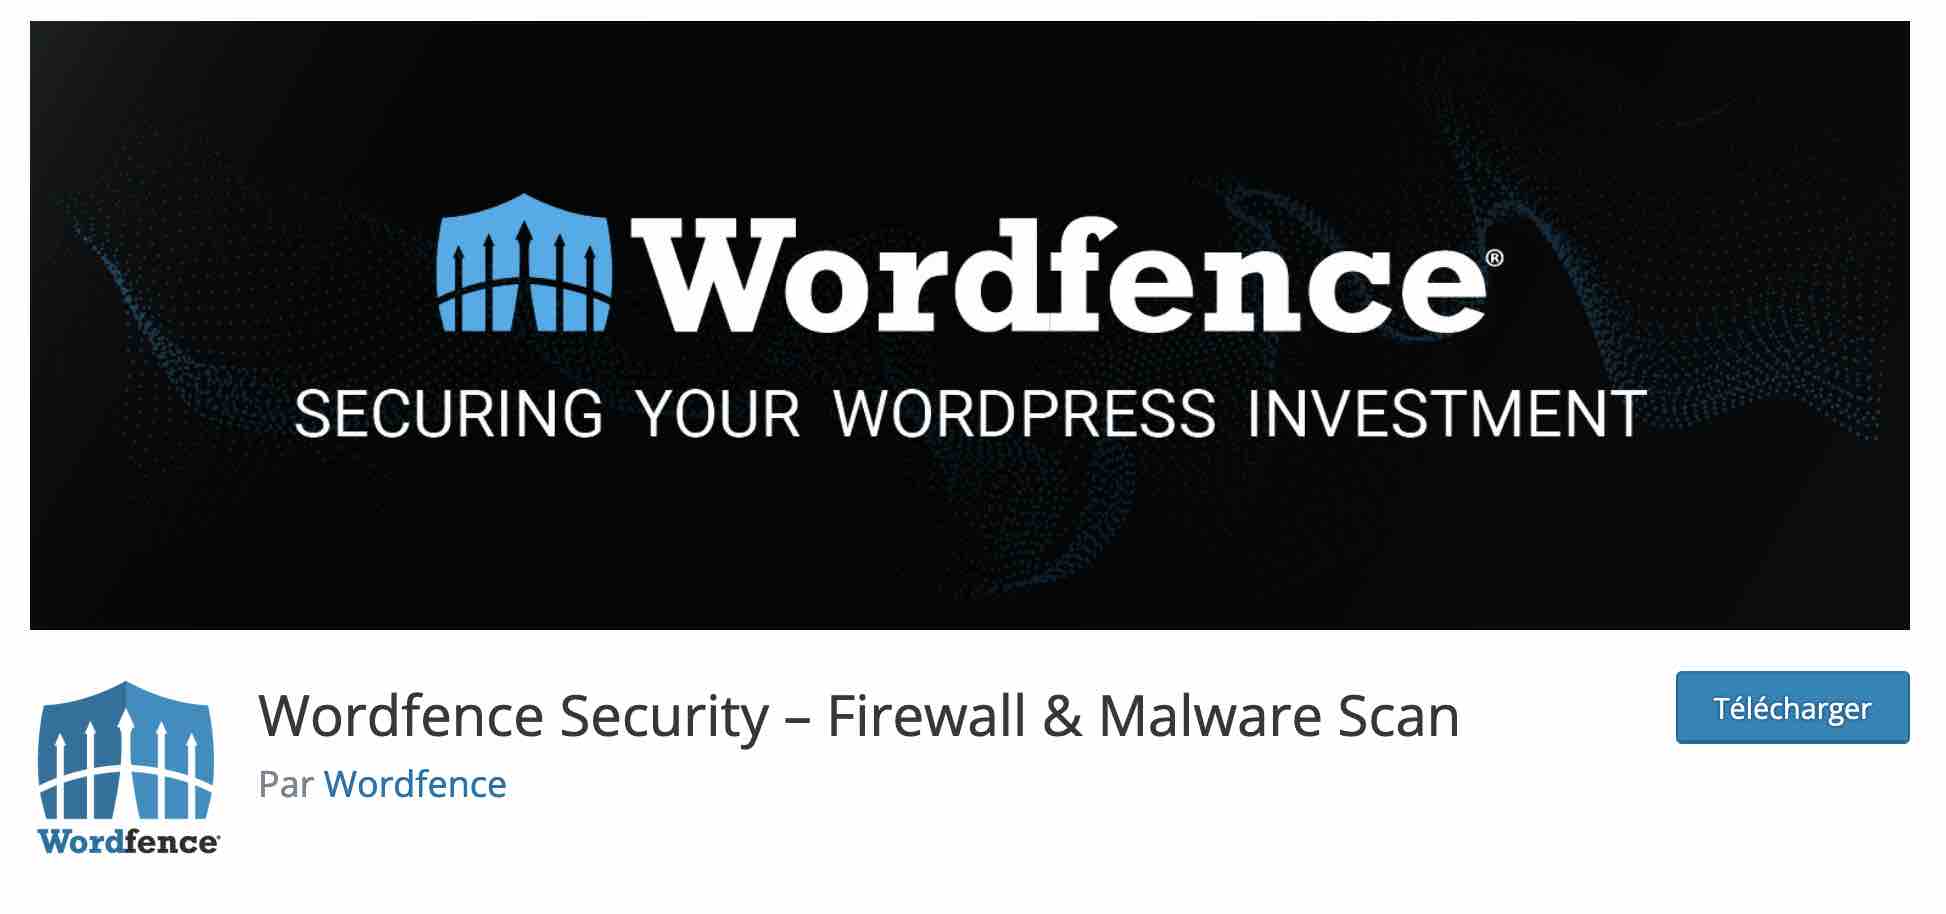 Wordfence Security permet de renforcer la sécurité de votre site WordPress.